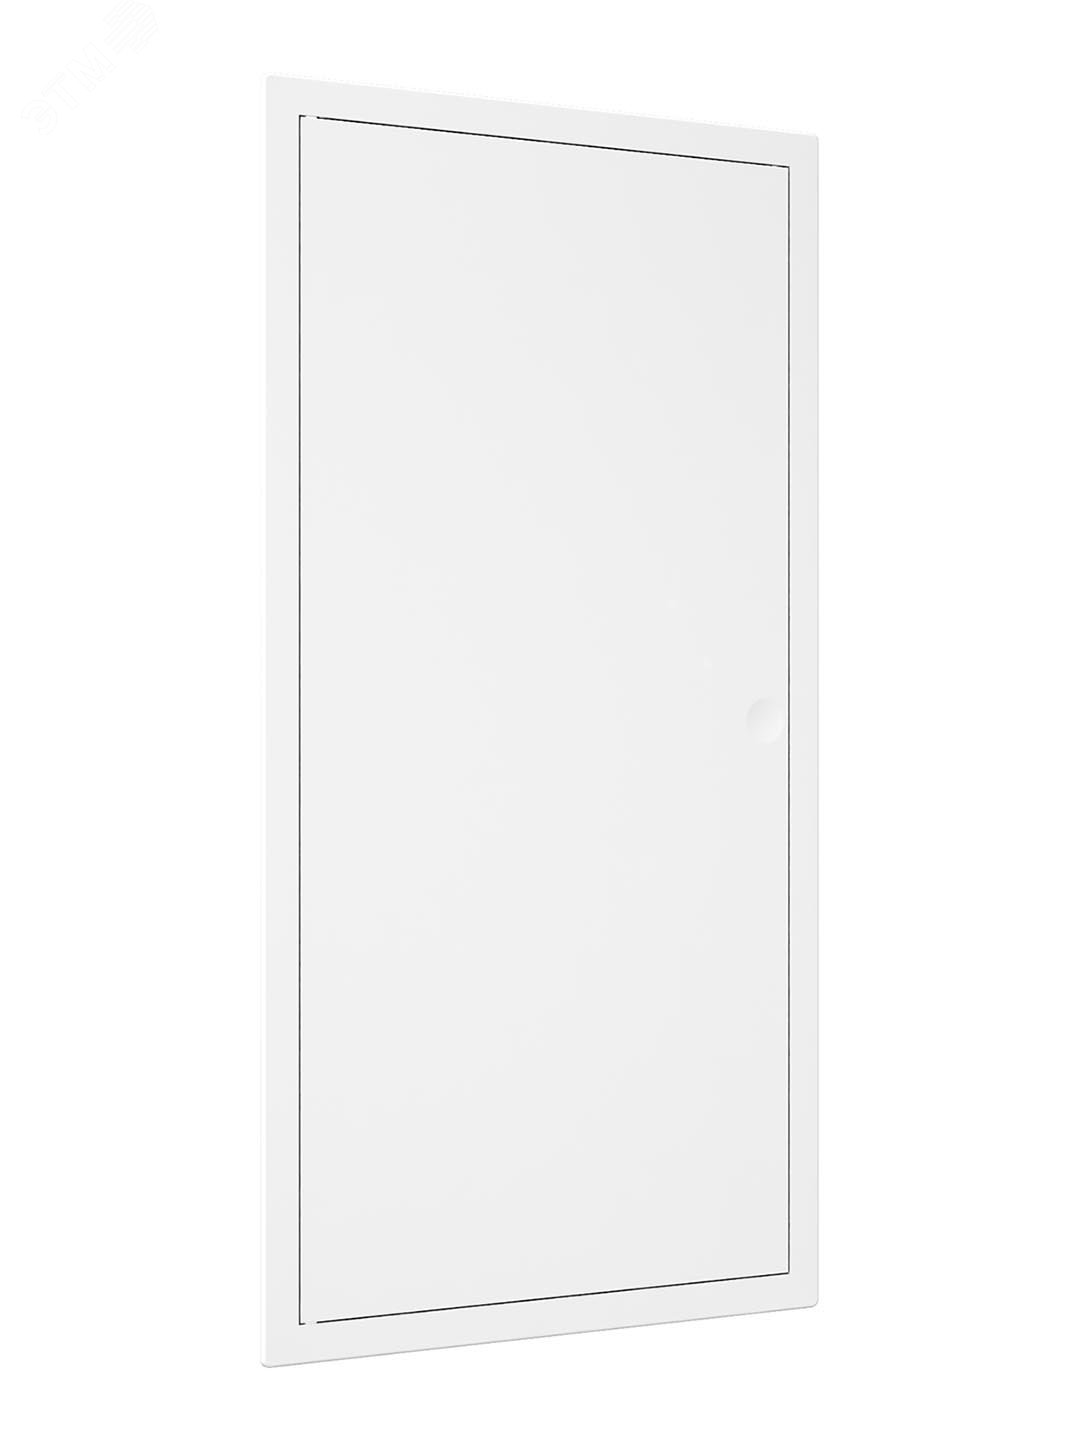 Люк-дверца ревизионный пластиковый нажимной 223х423 с фланцем 200х400 L2040N EVECS - превью